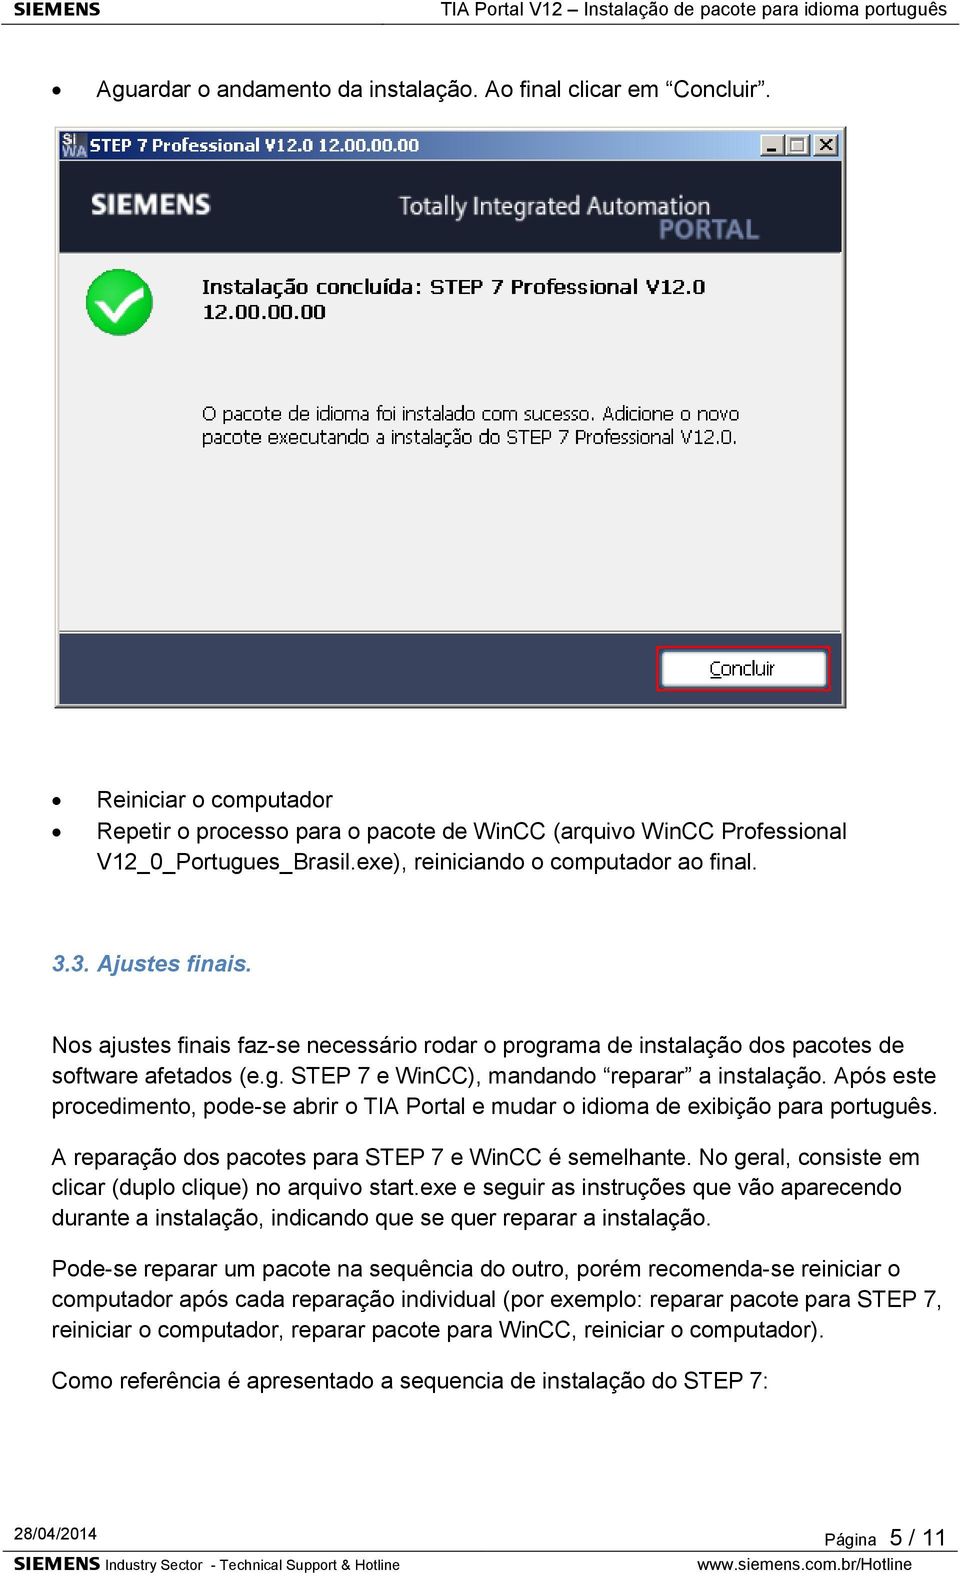 Após este procedimento, pode-se abrir o TIA Portal e mudar o idioma de exibição para português. A reparação dos pacotes para STEP 7 e WinCC é semelhante.